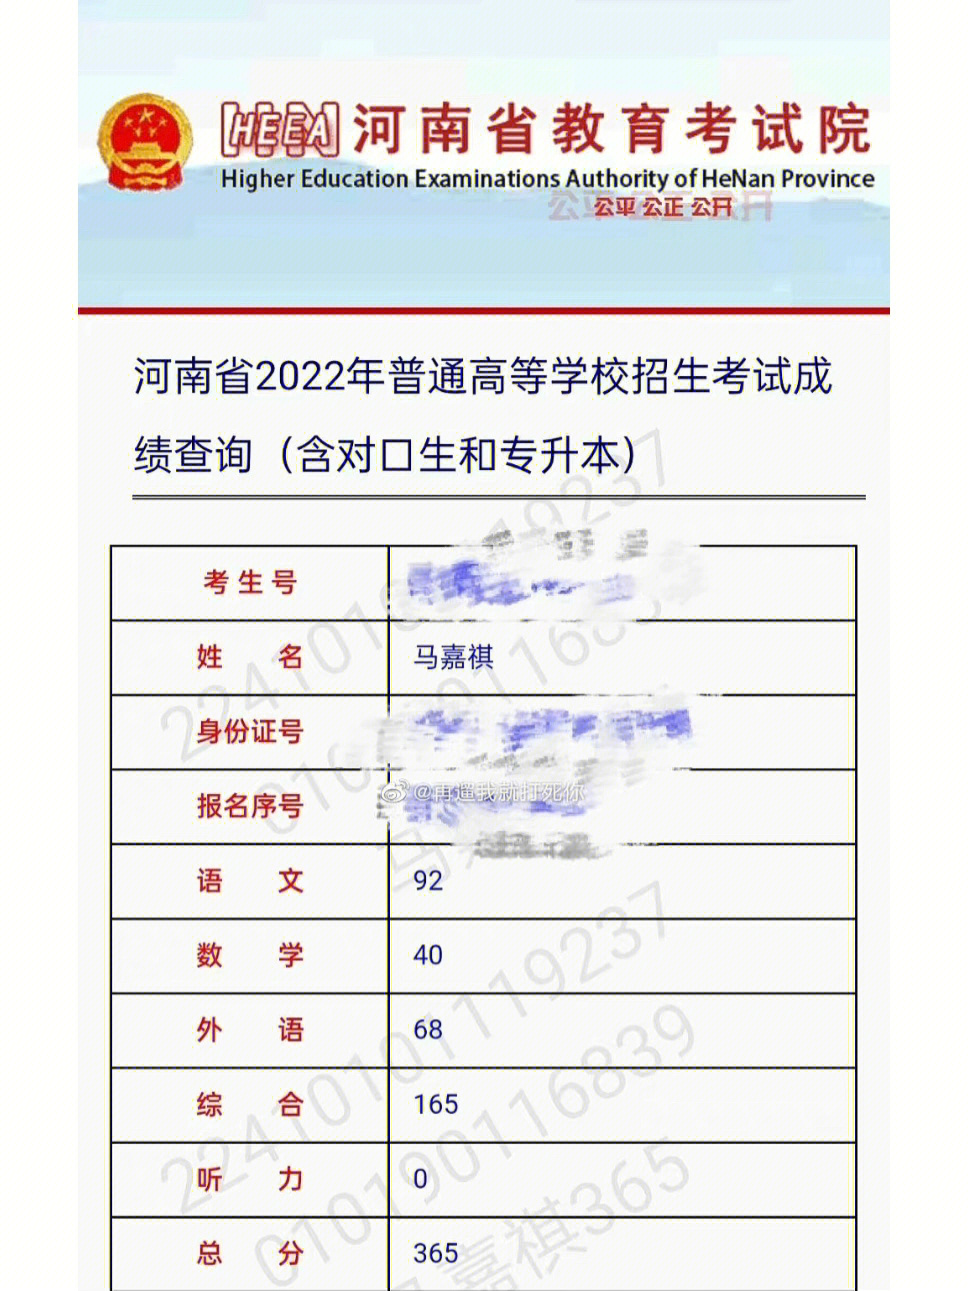 河南考生马嘉祺高考成绩365分,语文 92,数学 40 ,英语